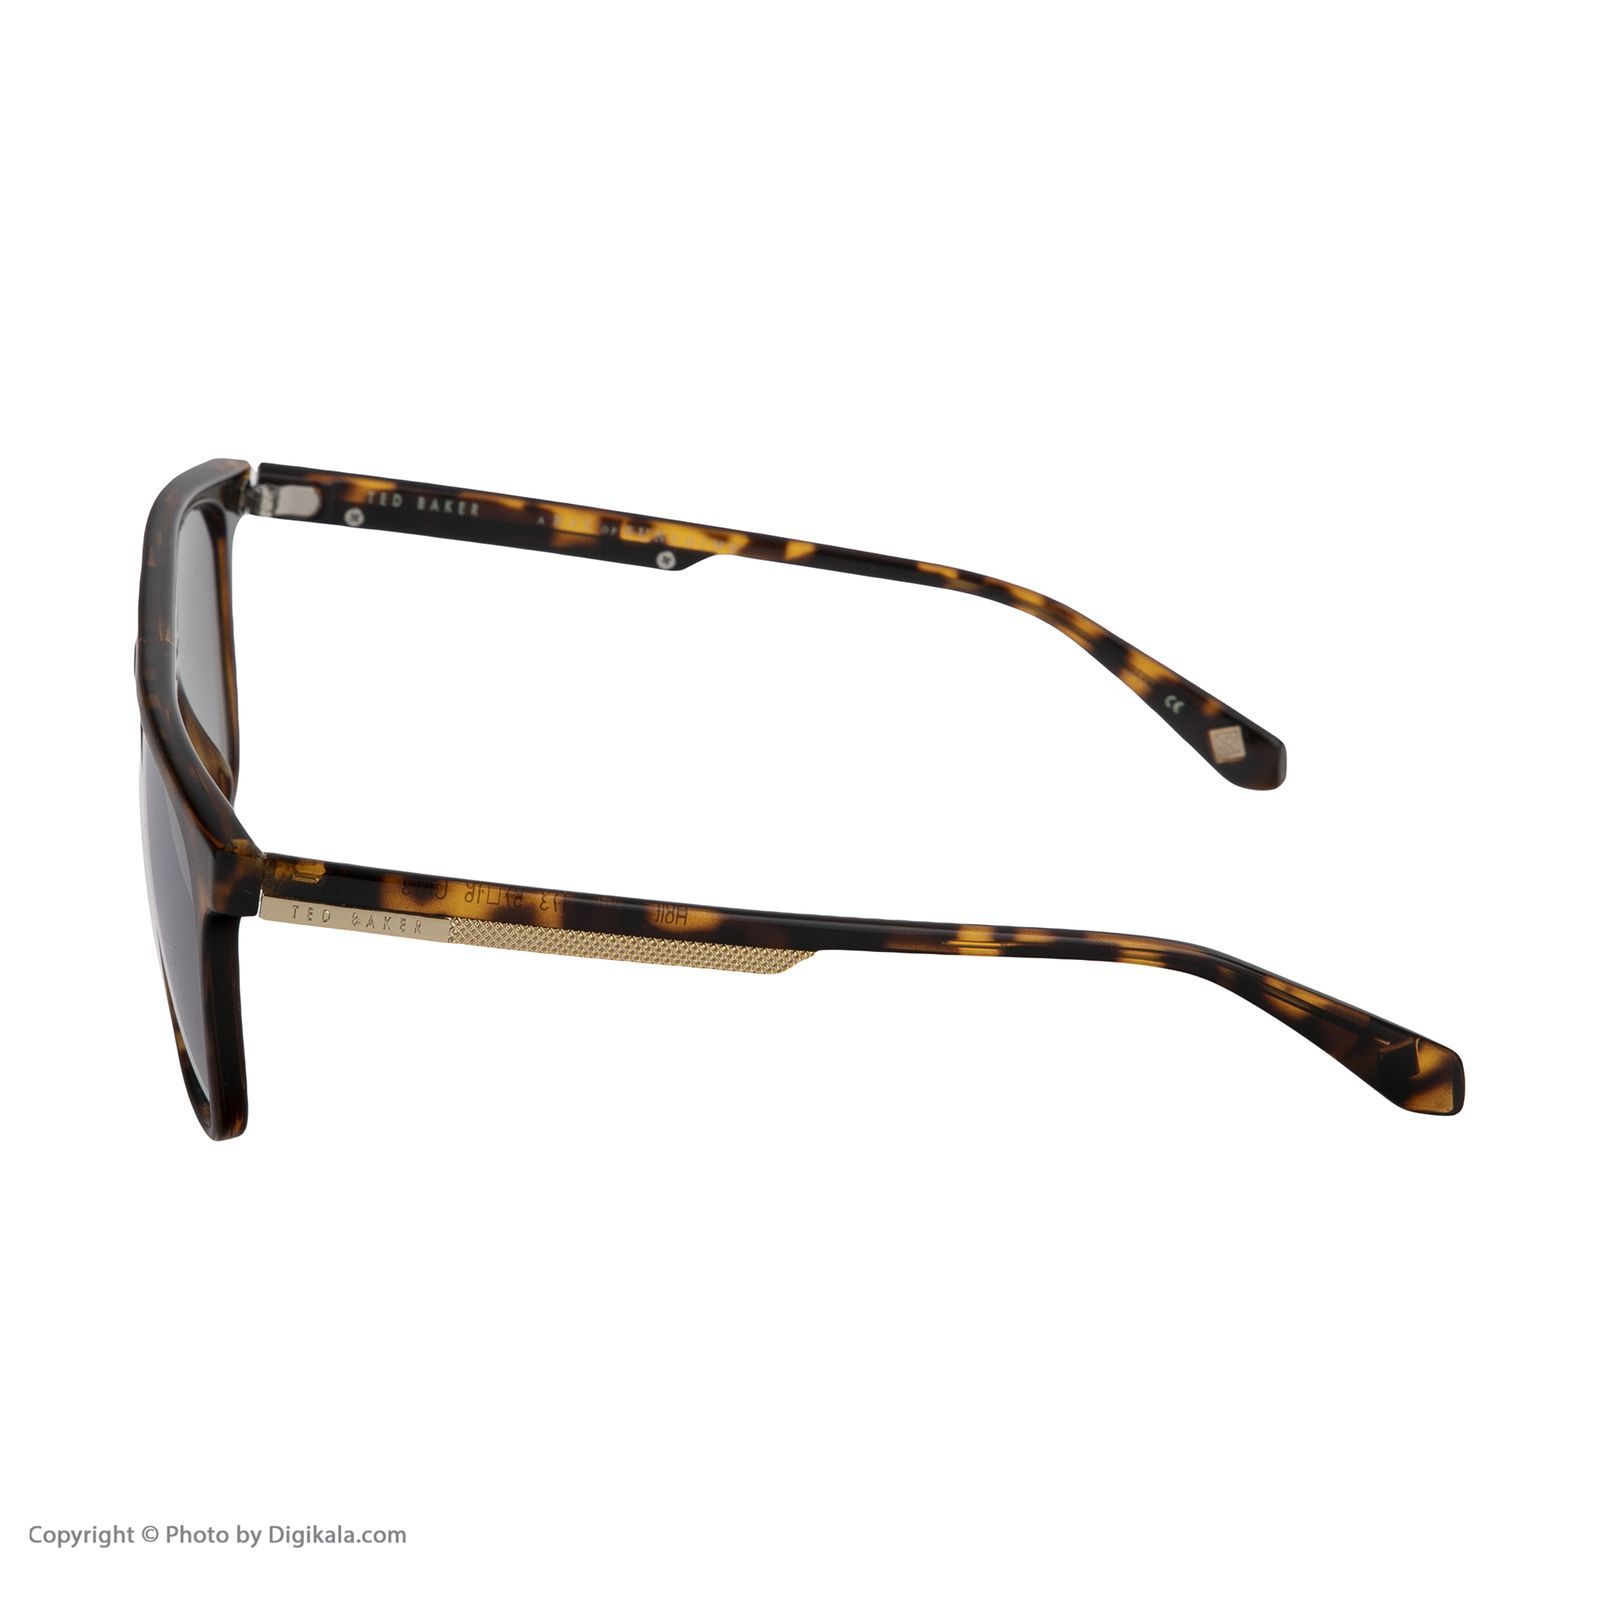 عینک آفتابی مردانه تد بیکر مدل TB 1494 173173 -  - 5